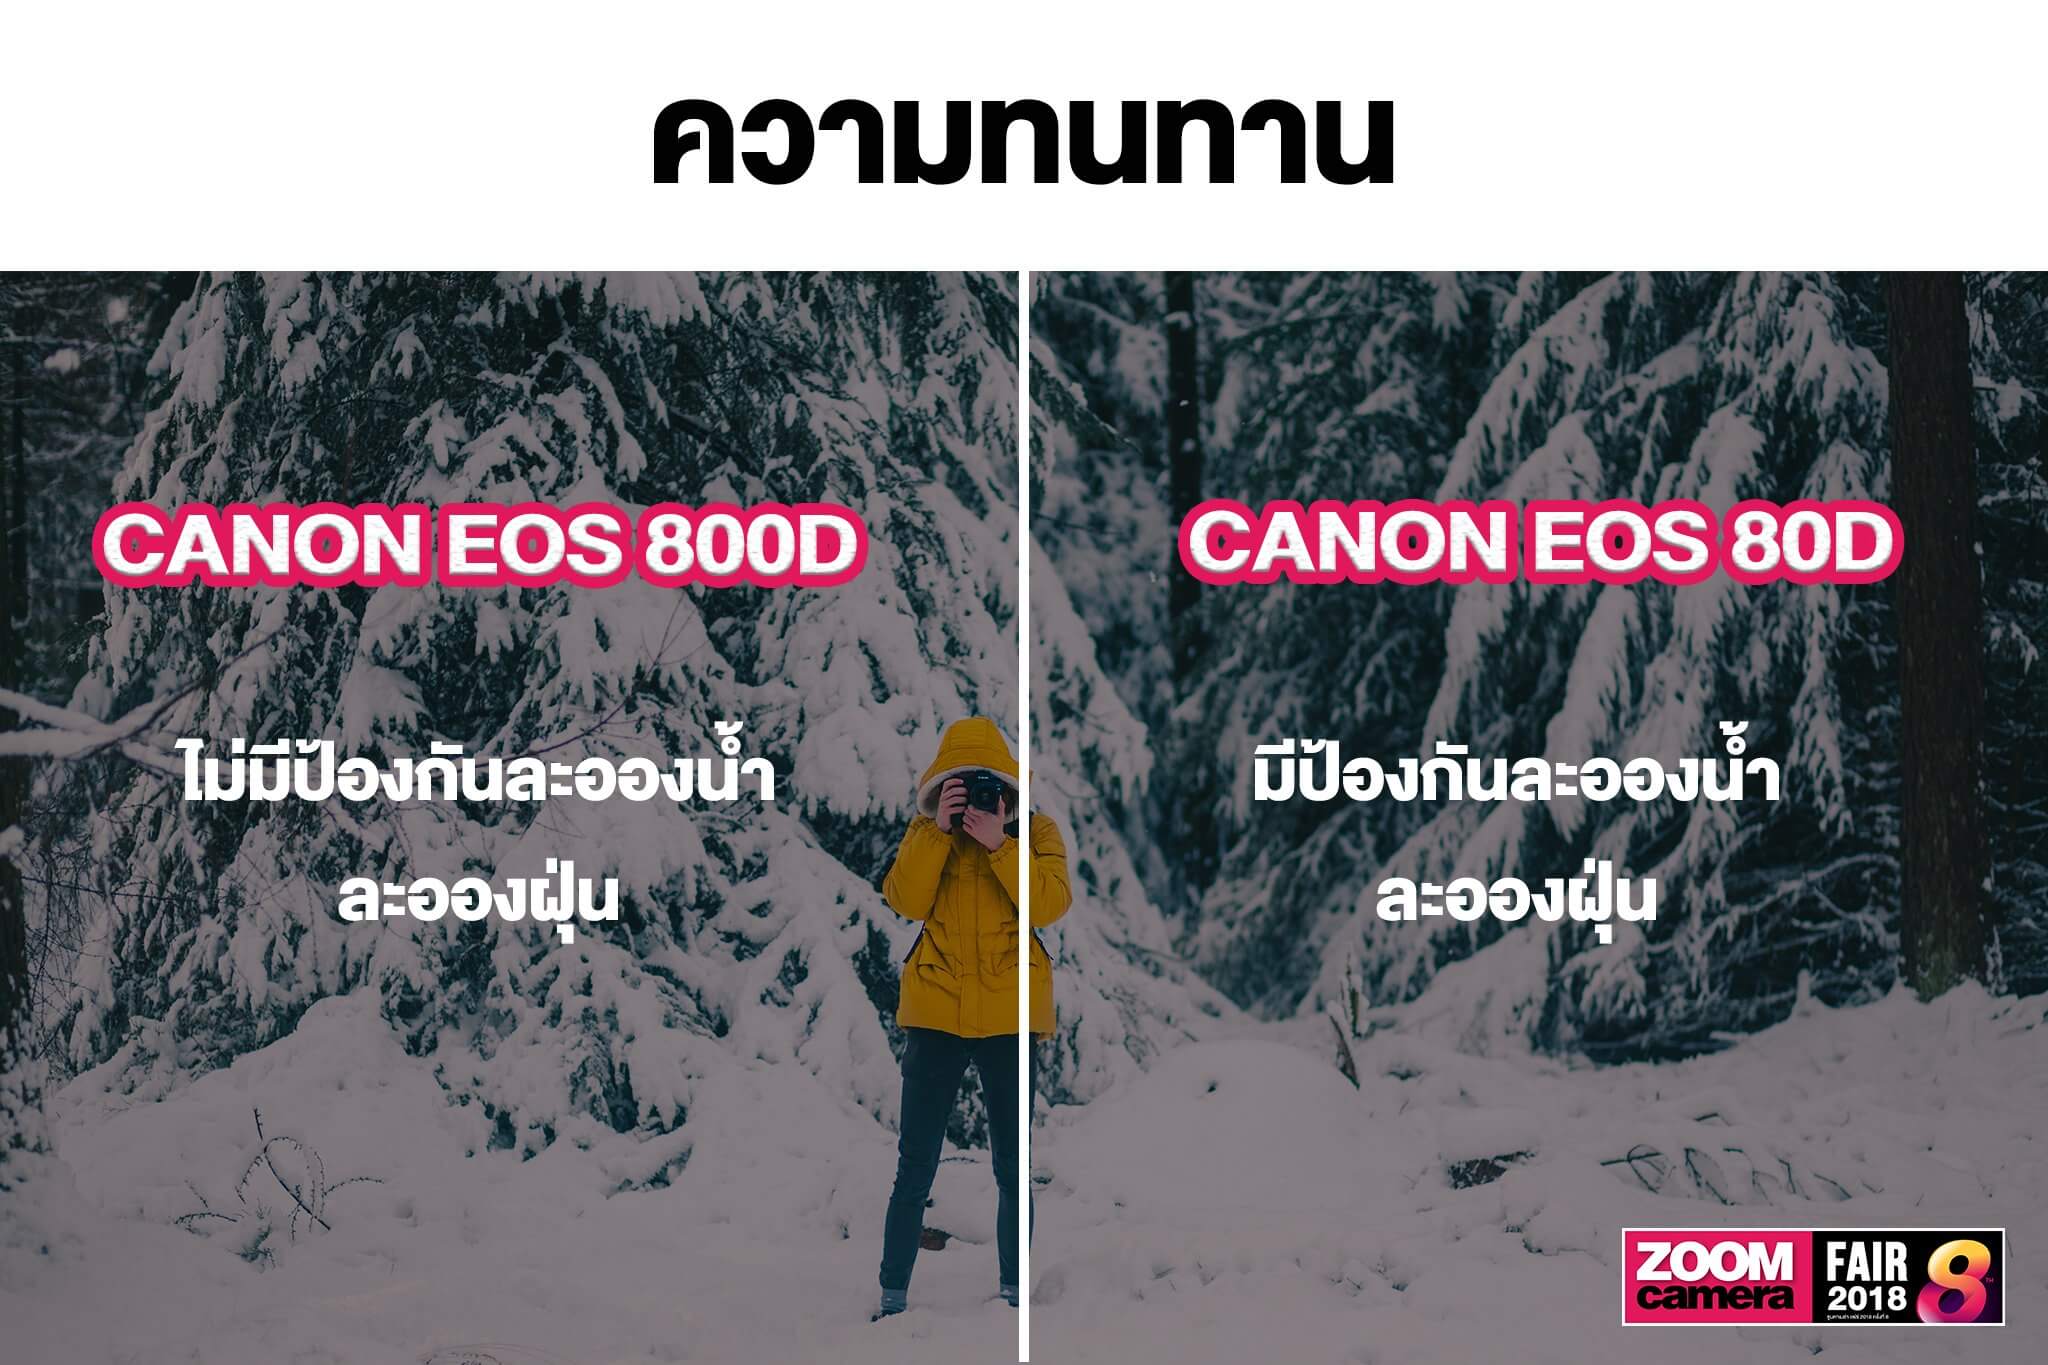 เปรียบเทียบ Canon EOS 800D VS Canon EOS 80D ควรเลือกซื้อรุ่นไหนดี 